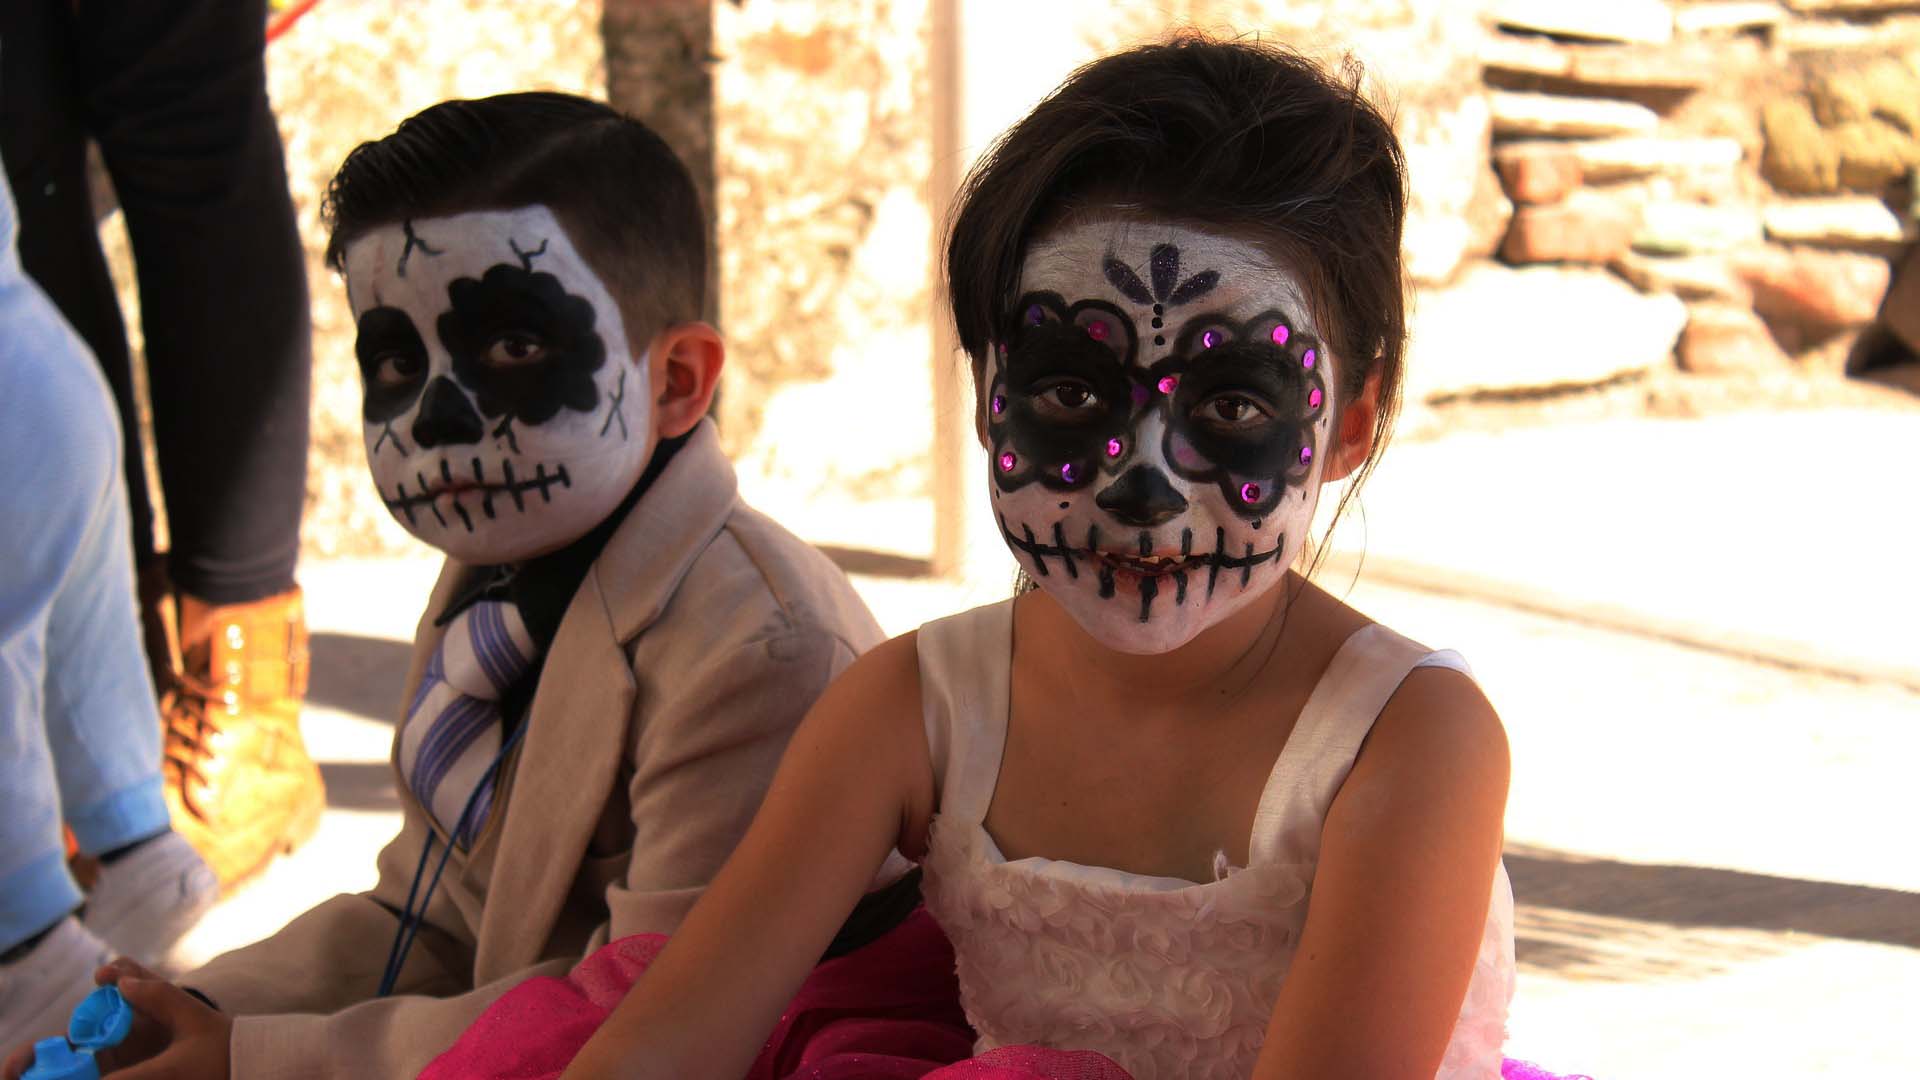 Halloweeni sminkek gyerekeknek: Lányoknak és fiúknak egyaránt